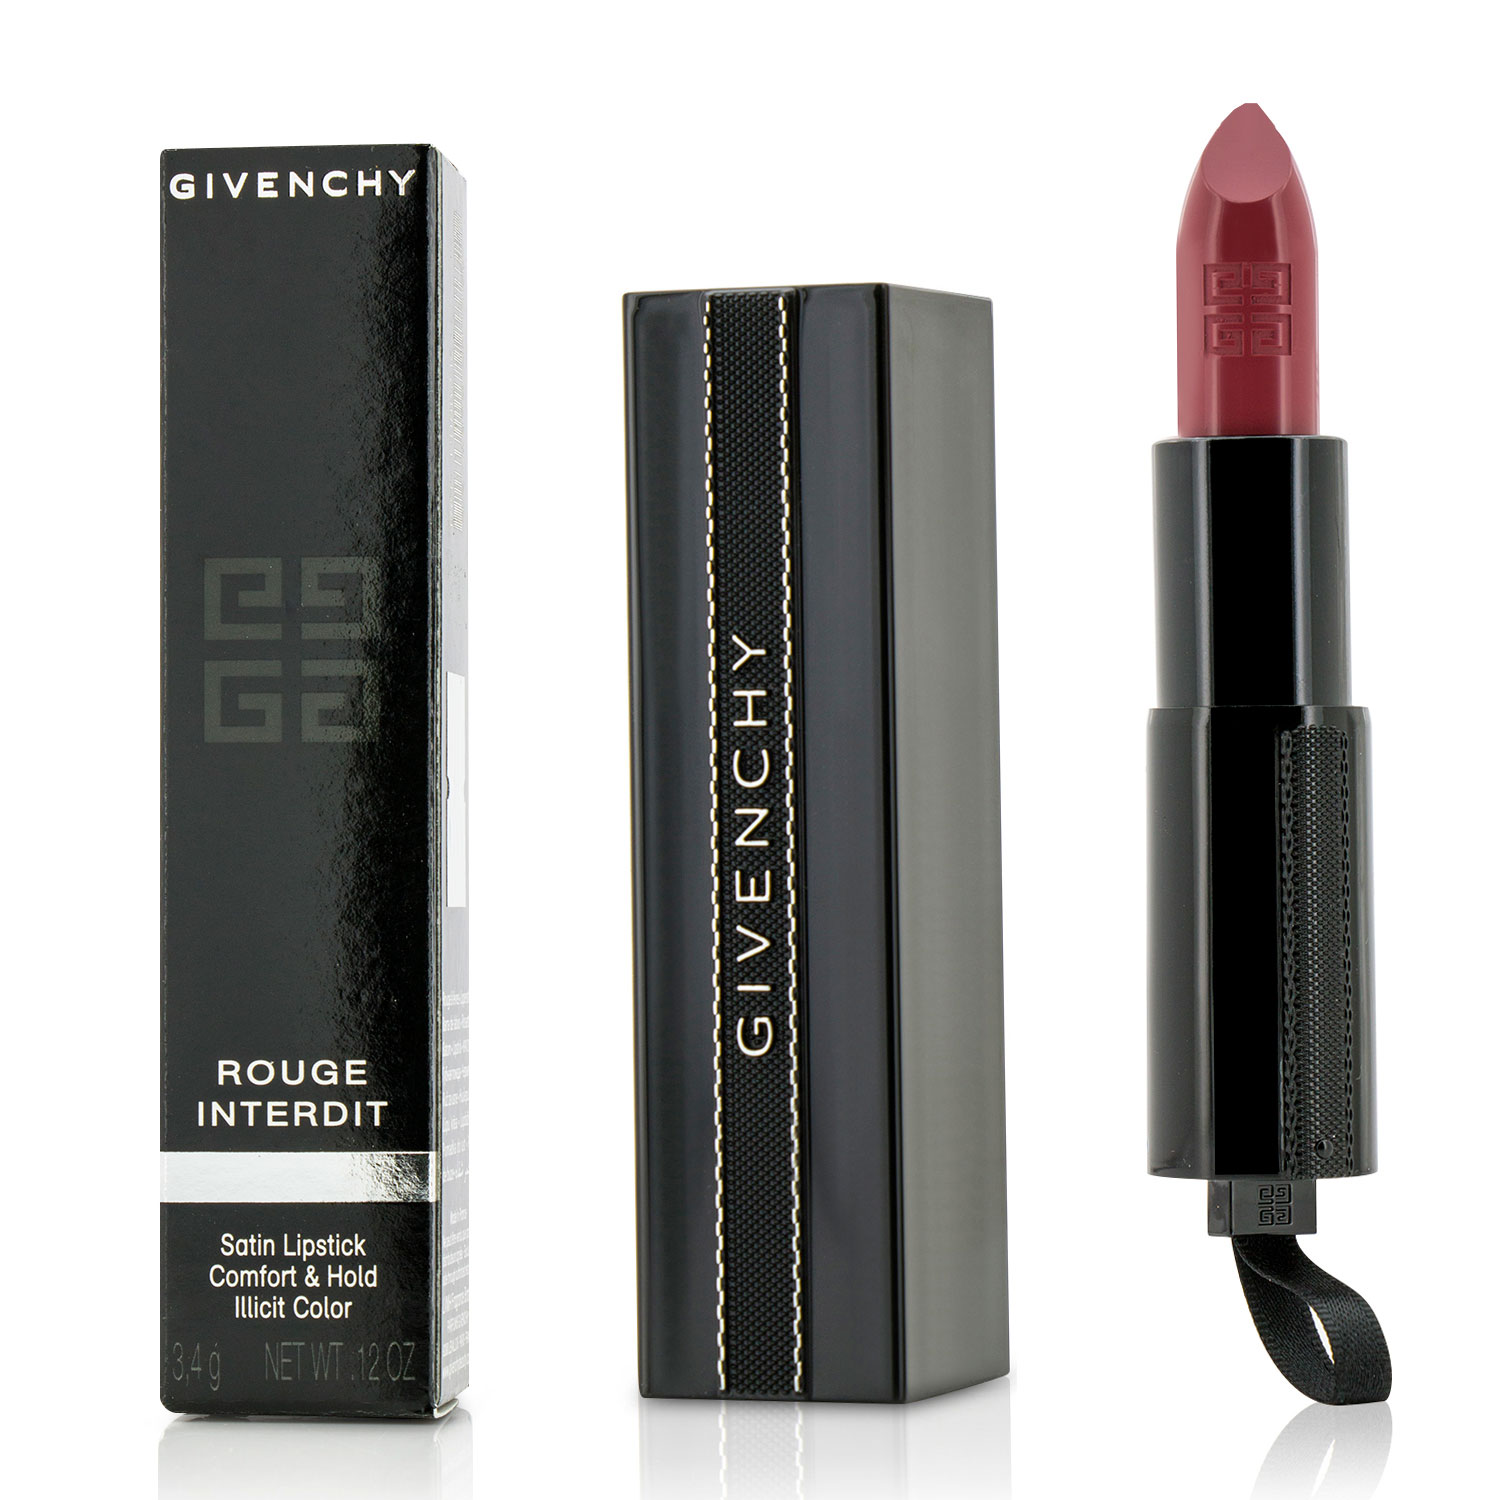 Rouge Interdit Satin Lipstick - # 10 Boyish Rose Givenchy Image